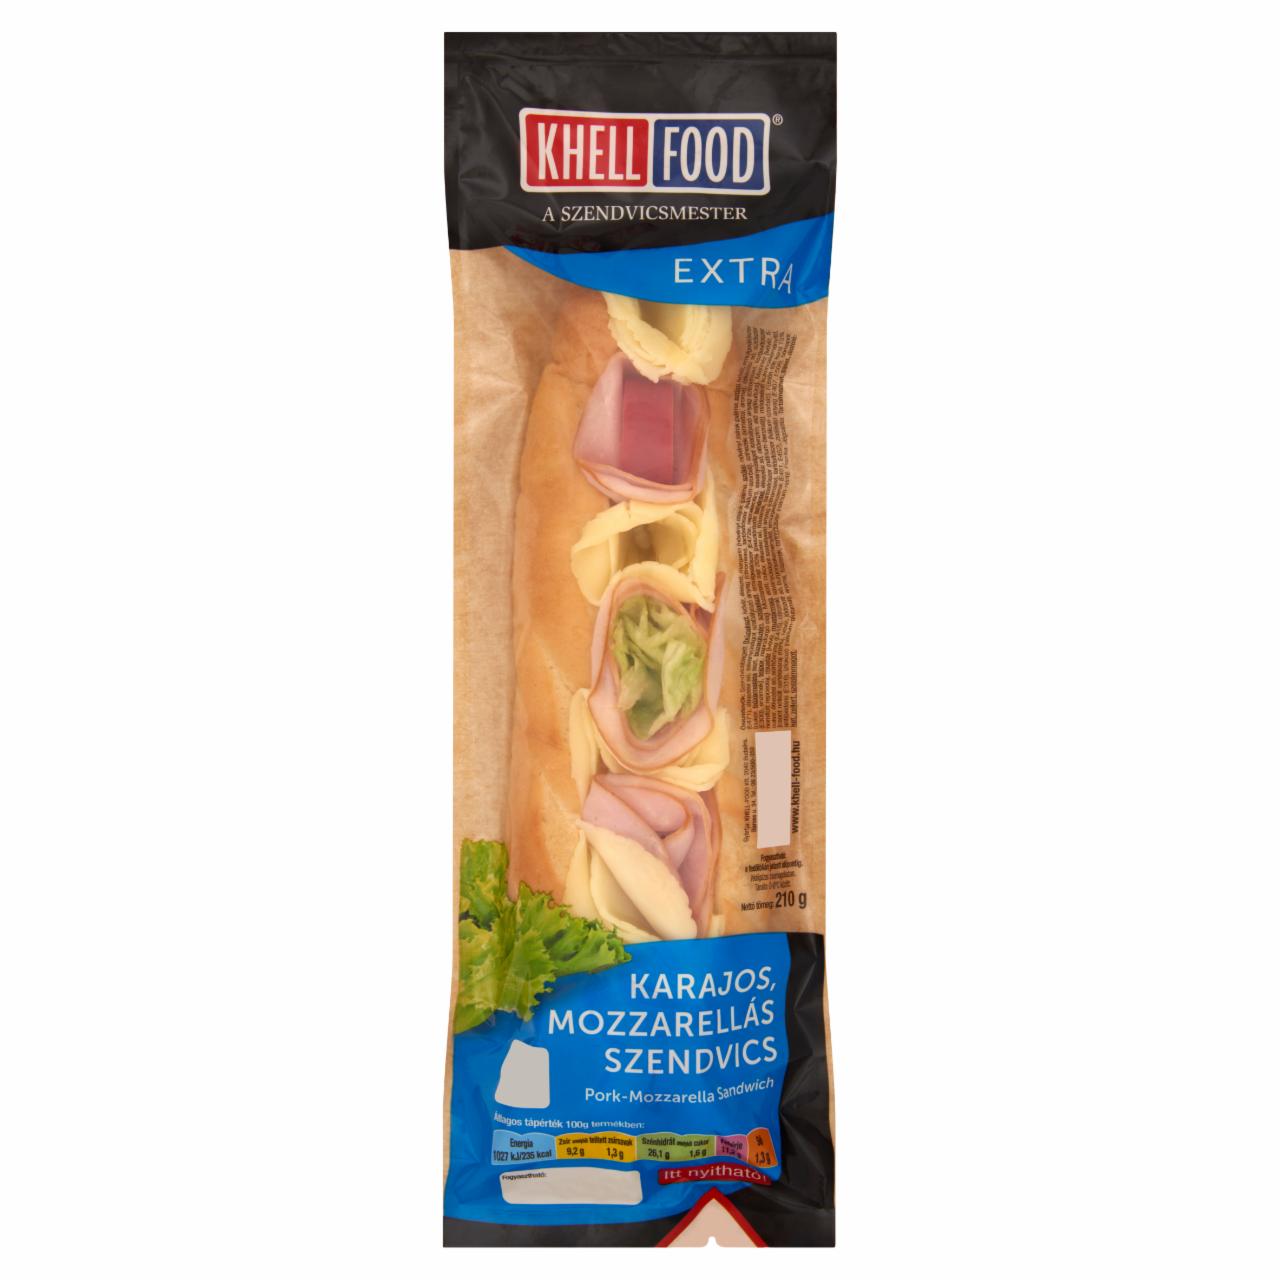 Képek - Khell-Food Extra karajos, mozzarellás szendvics 210 g